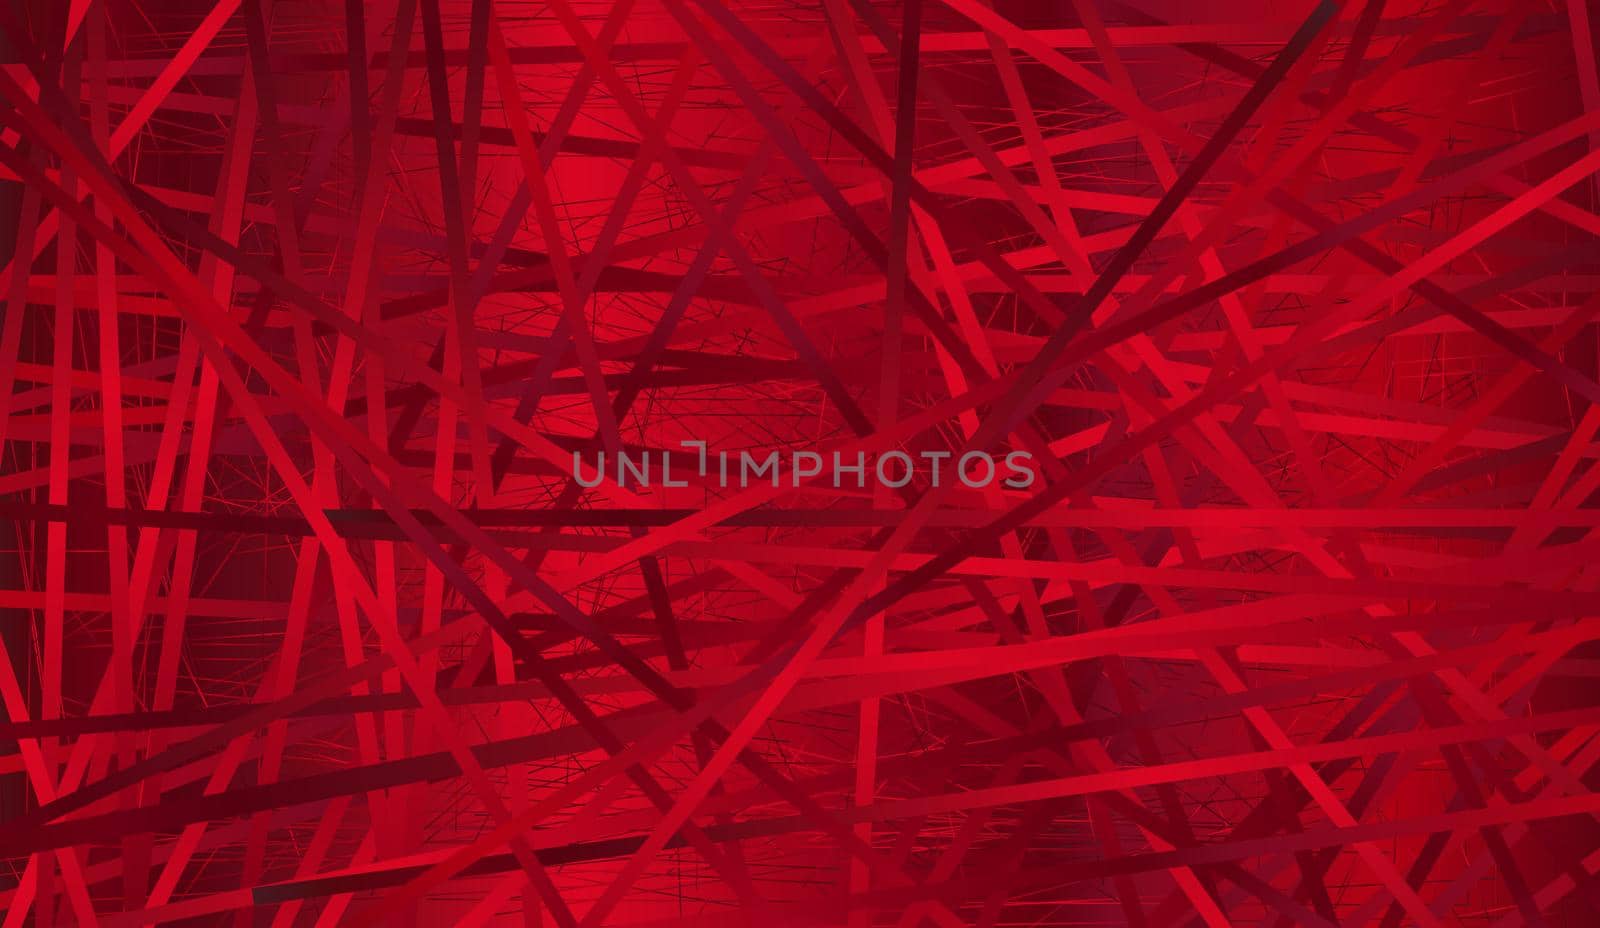 A dark red heat background over a dark backdrop